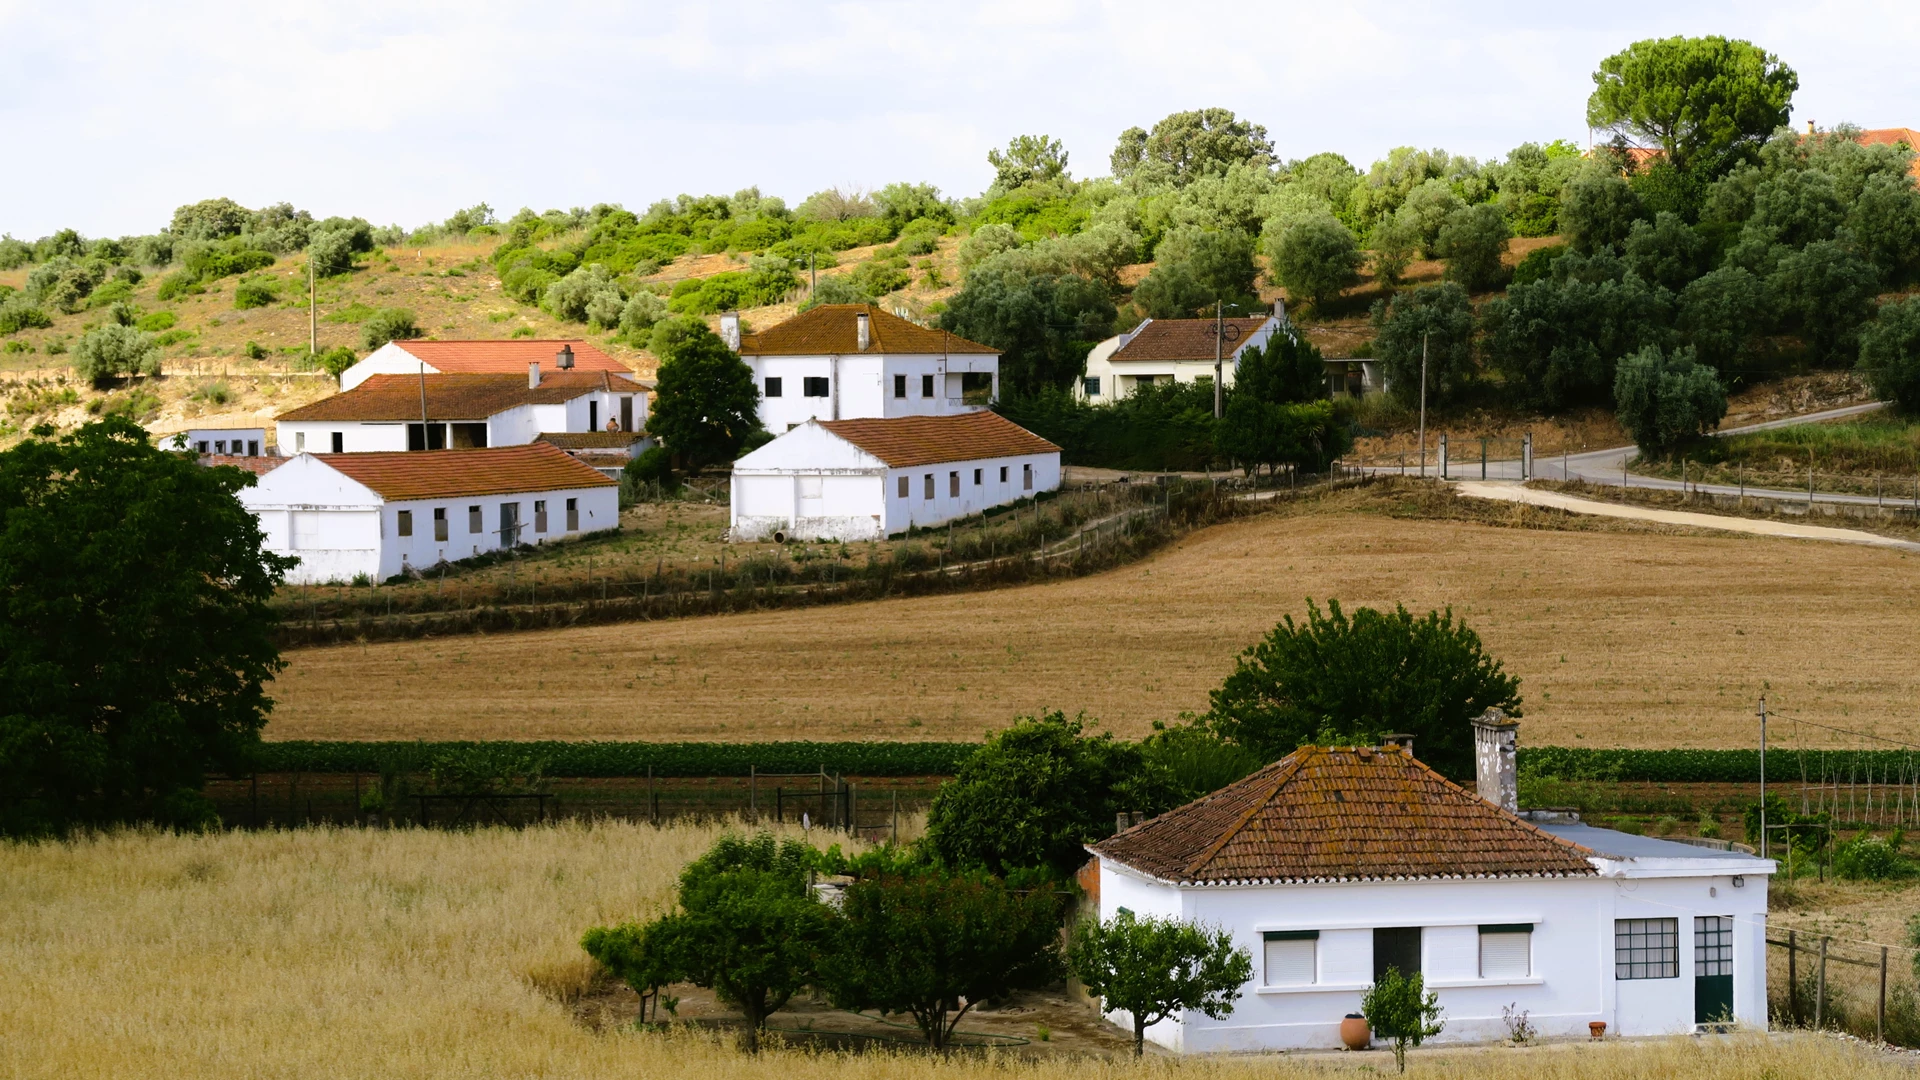 Wir suchen Landhäuser und Bauernhöfe in Portugal.